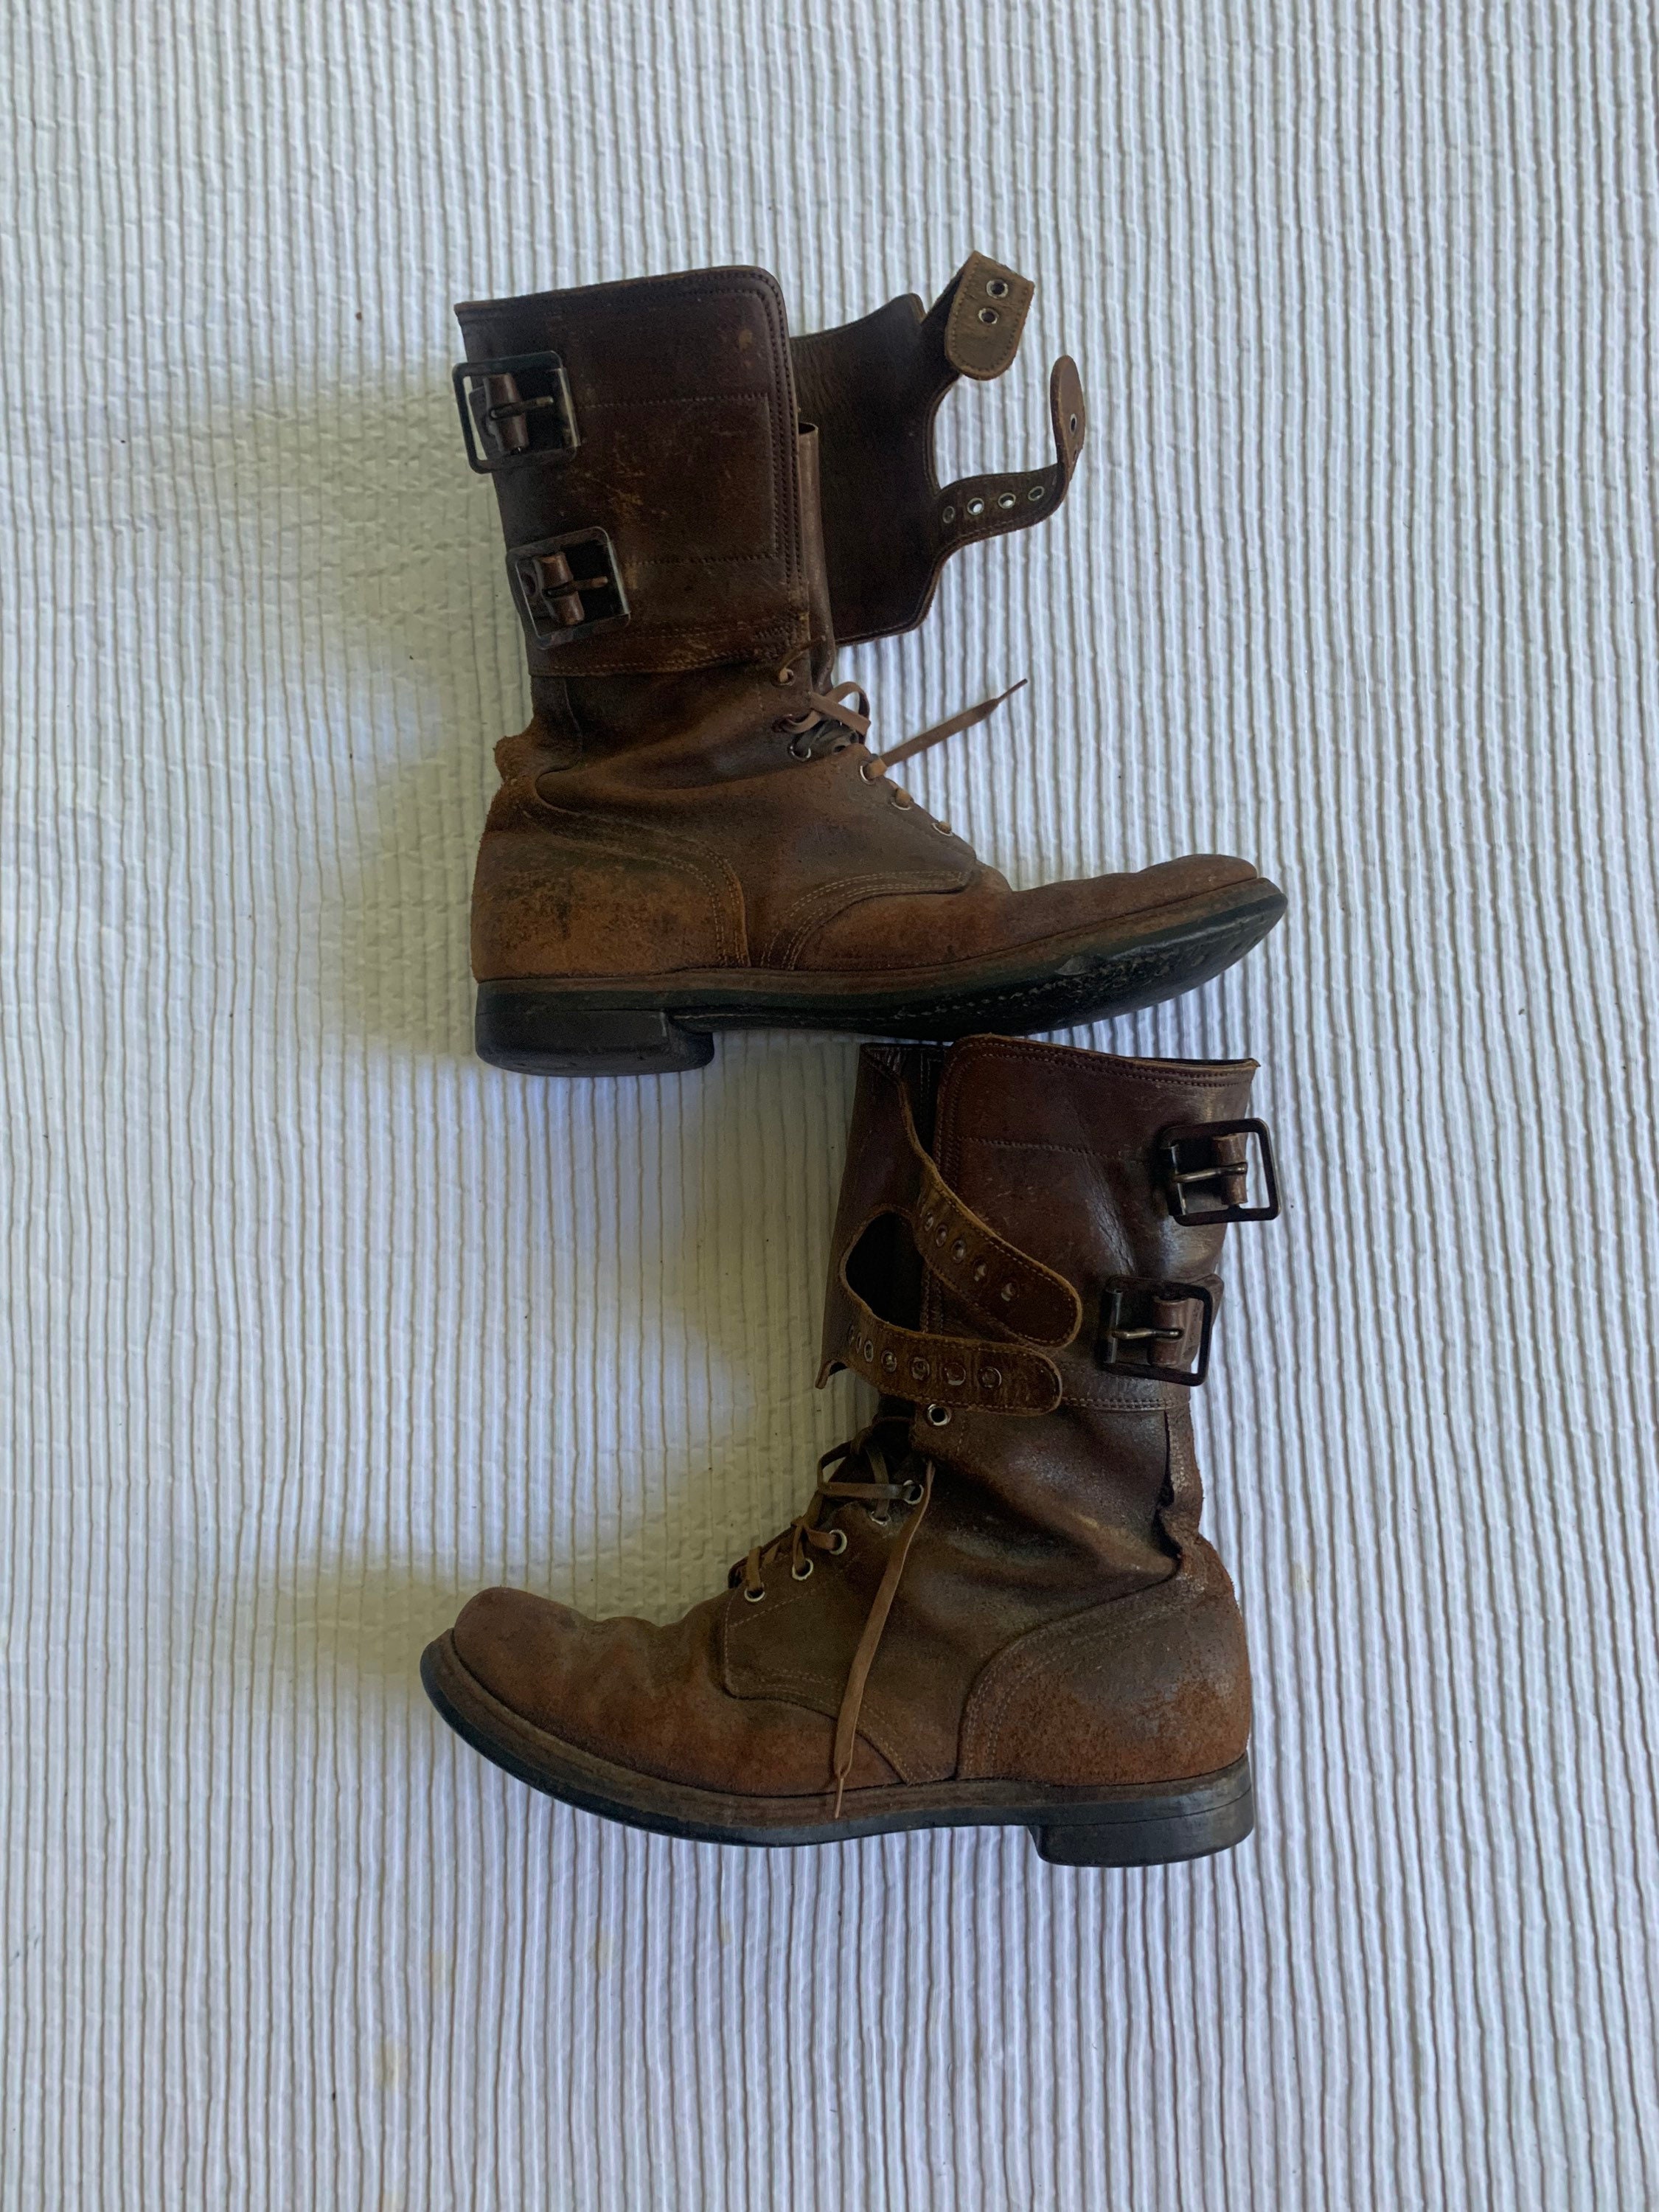 WWII Duitse Innerbrucker Marwa Militaire Bergbeklimmers Chukka Wandelen Mens Boots Shoes Maat 10 met RRL Denim Trucker Hat. Schoenen Herenschoenen Laarzen Werklaarzen & Kisten 